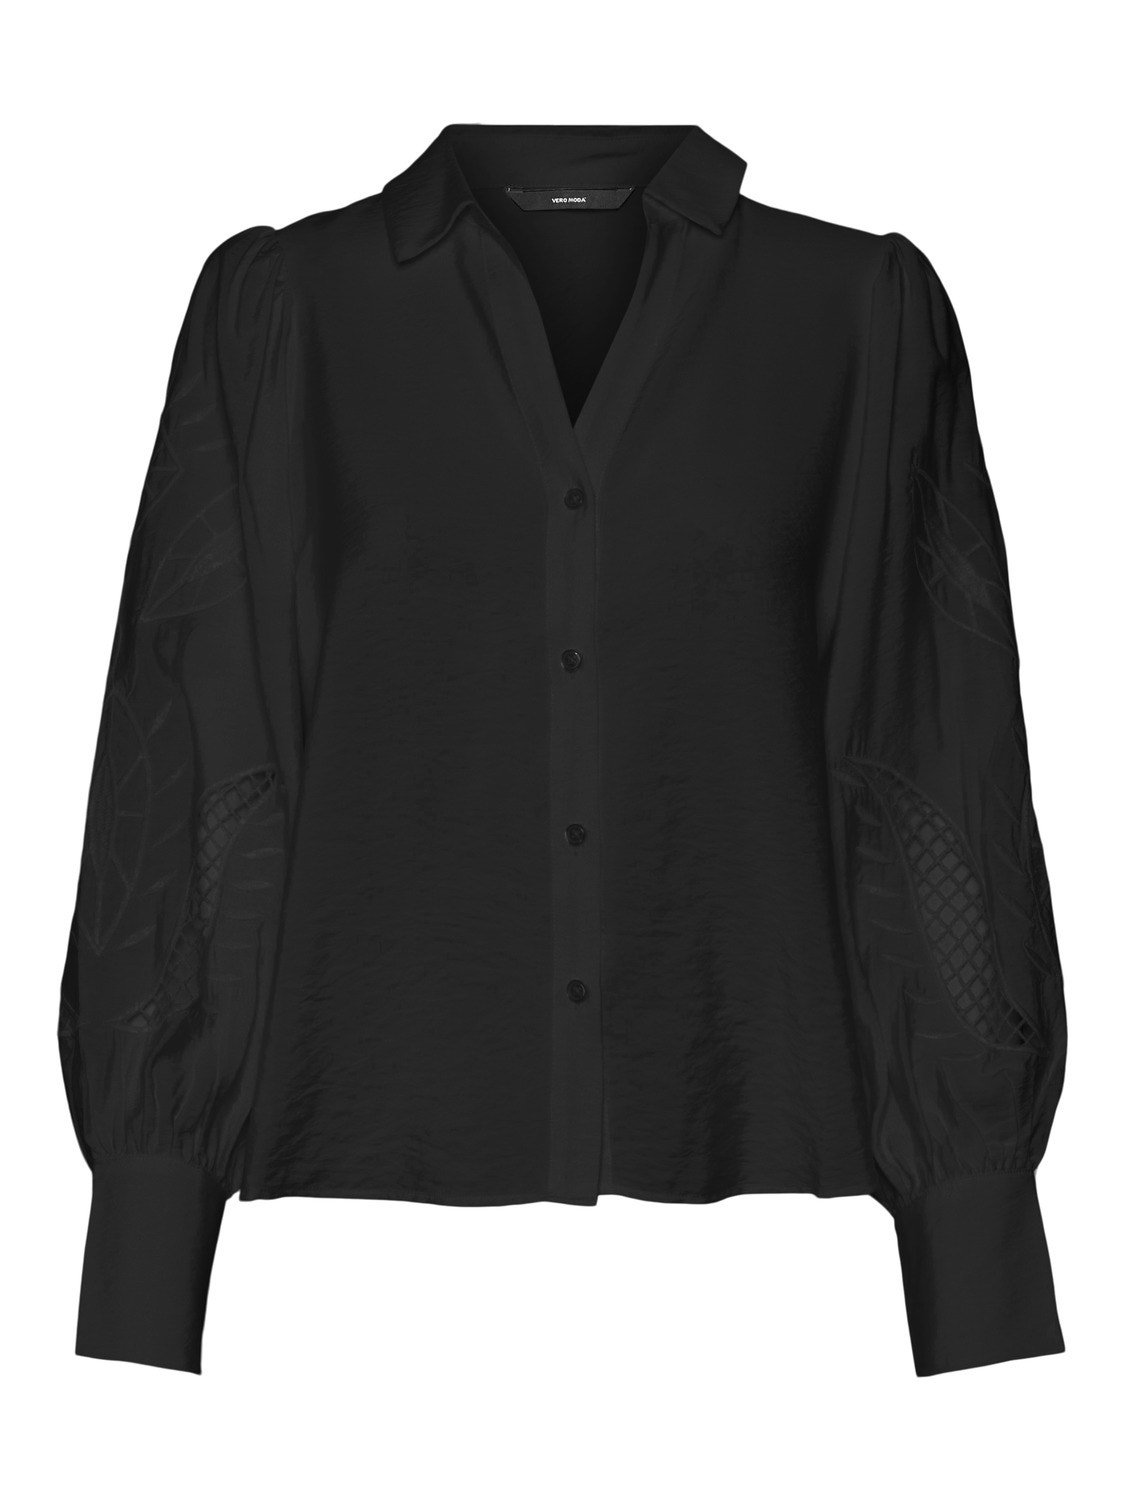 Vero Moda VMOSLA Shirt -Black - 10296529